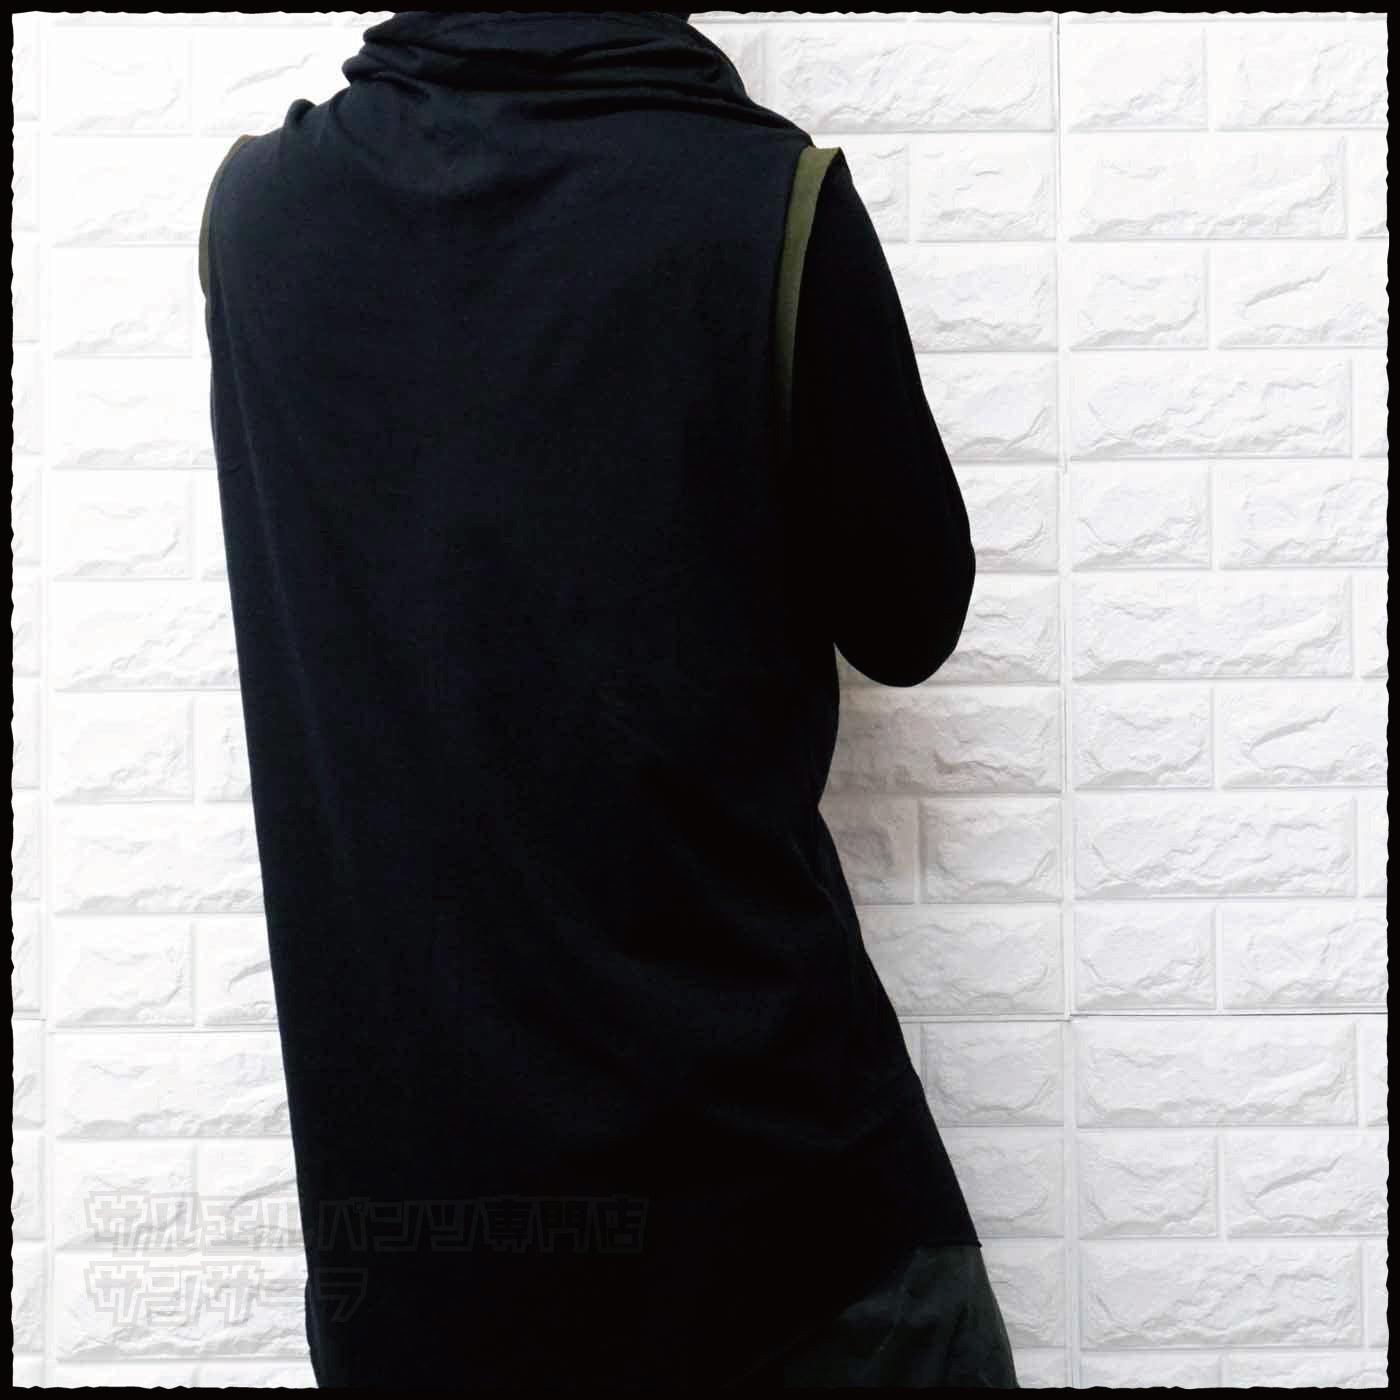 ベスト タンクトップ ノースリーブ Tシャツ オフタートル メンズ レディース モード系 V系 サロン系 黒 変形アウター 半袖 韓国 ストリート ファッション